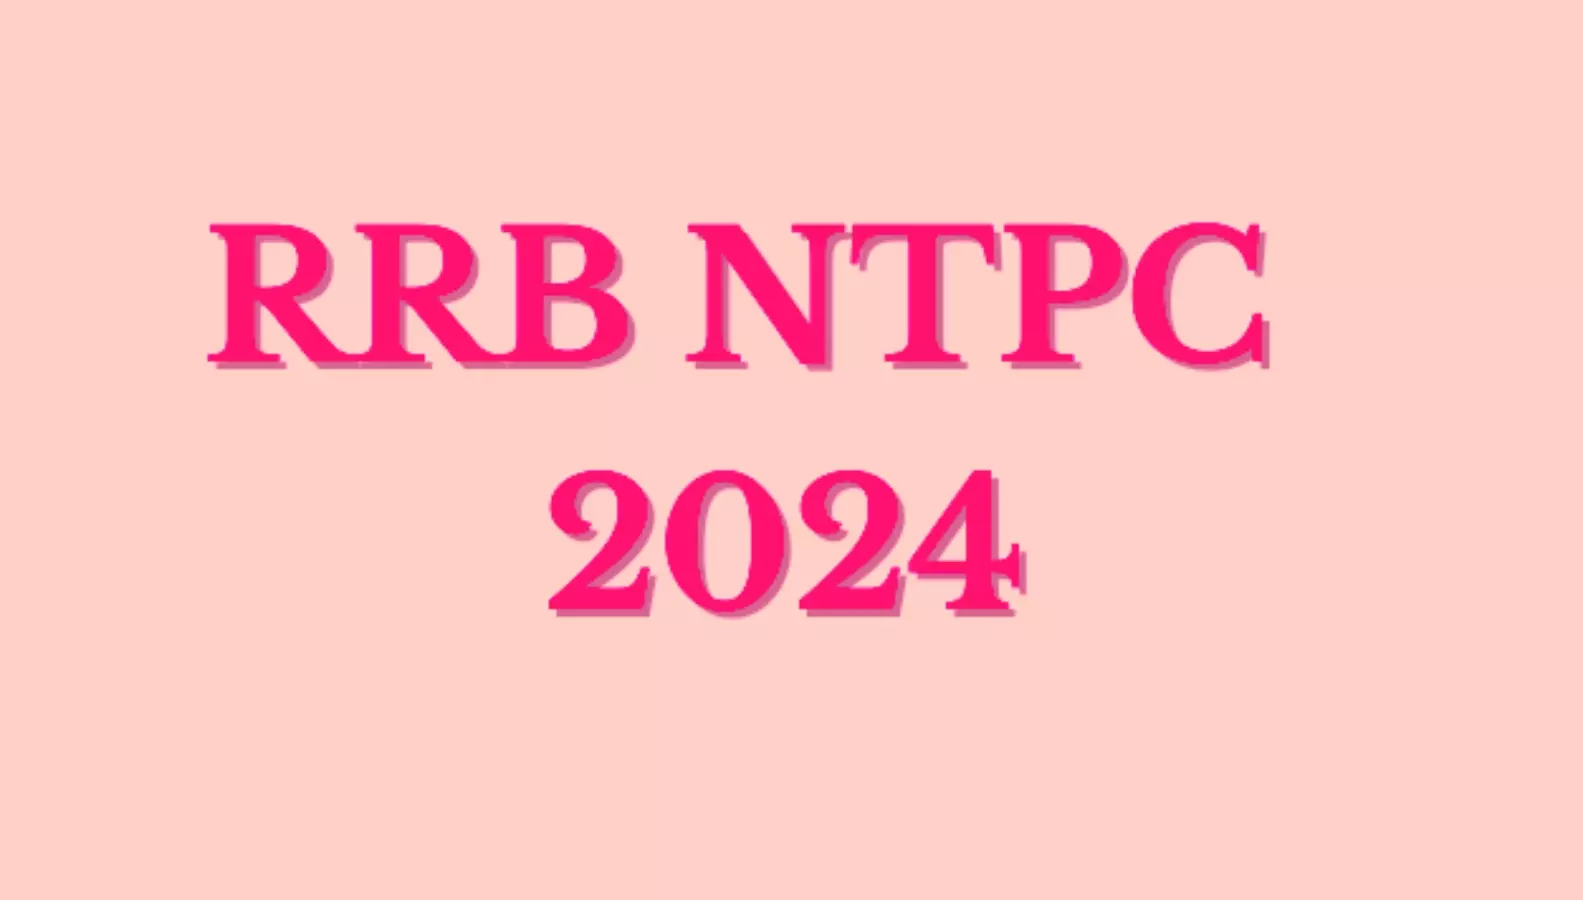 RAIWAY NTPC VACANCY 2024: रेलवे एनटीपीसी में 10884 पदों पर जल्द होंगे आवेदन सैलरी 65 ,000 रूपए प्रतिमाह